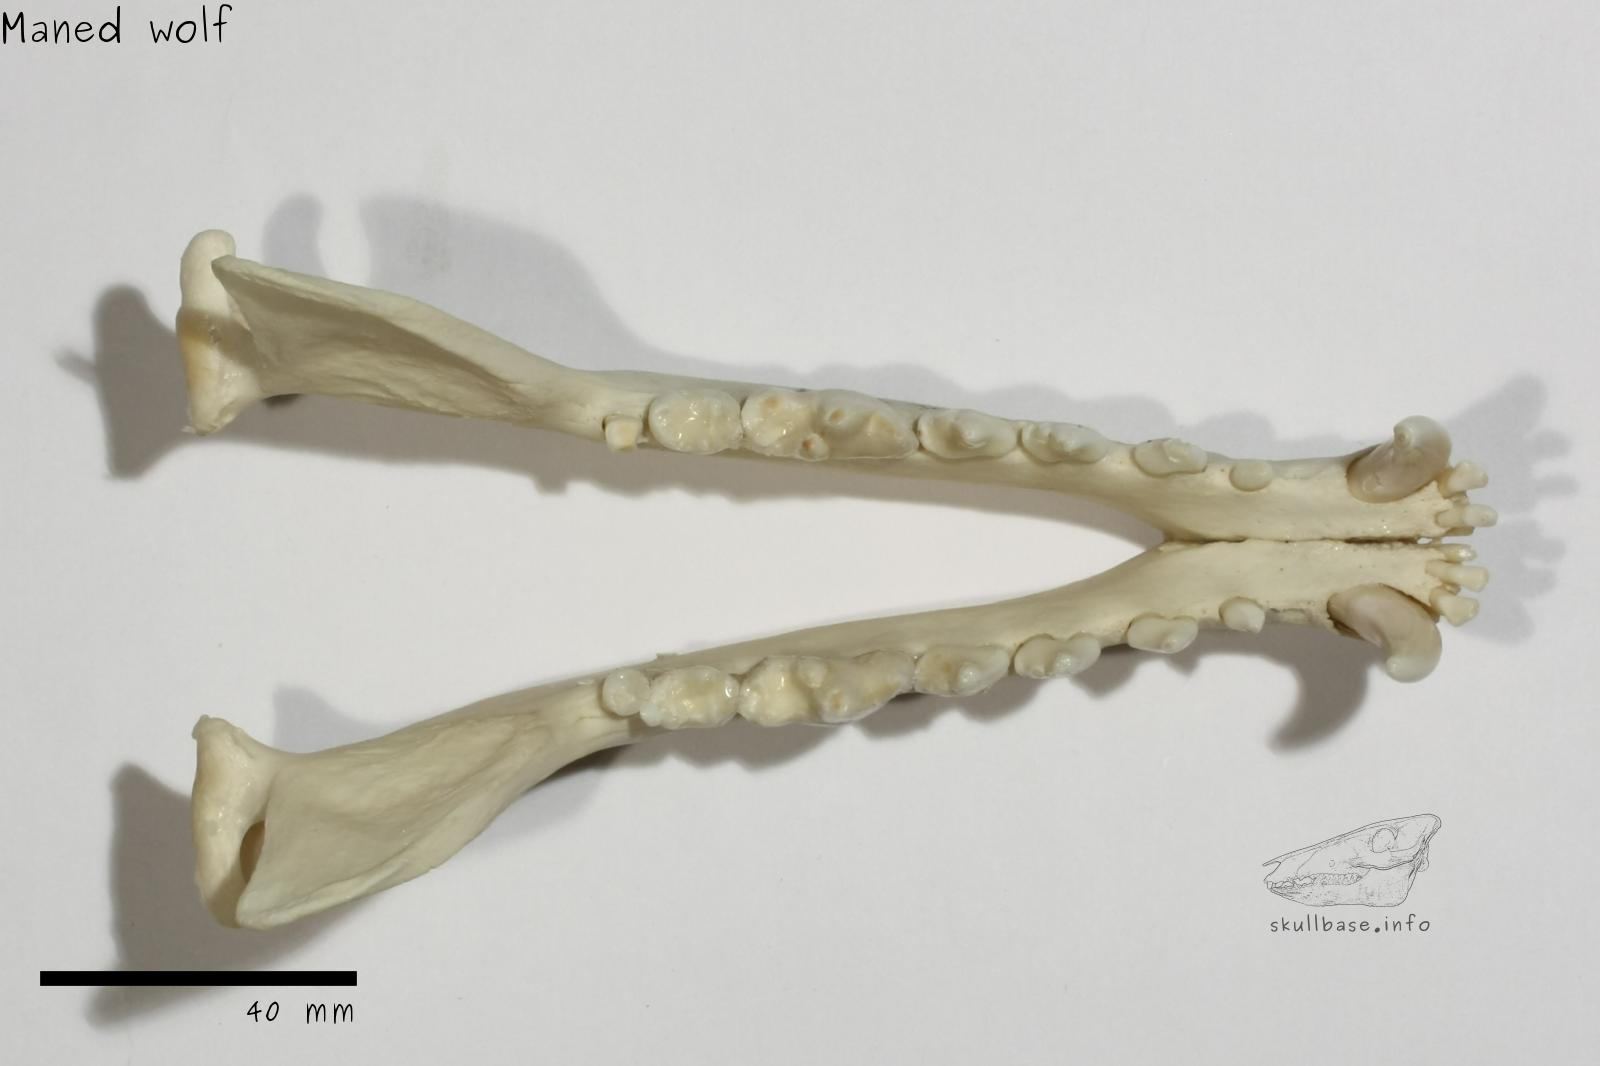 Maned wolf (Chrysocyon brachyurus) jaw